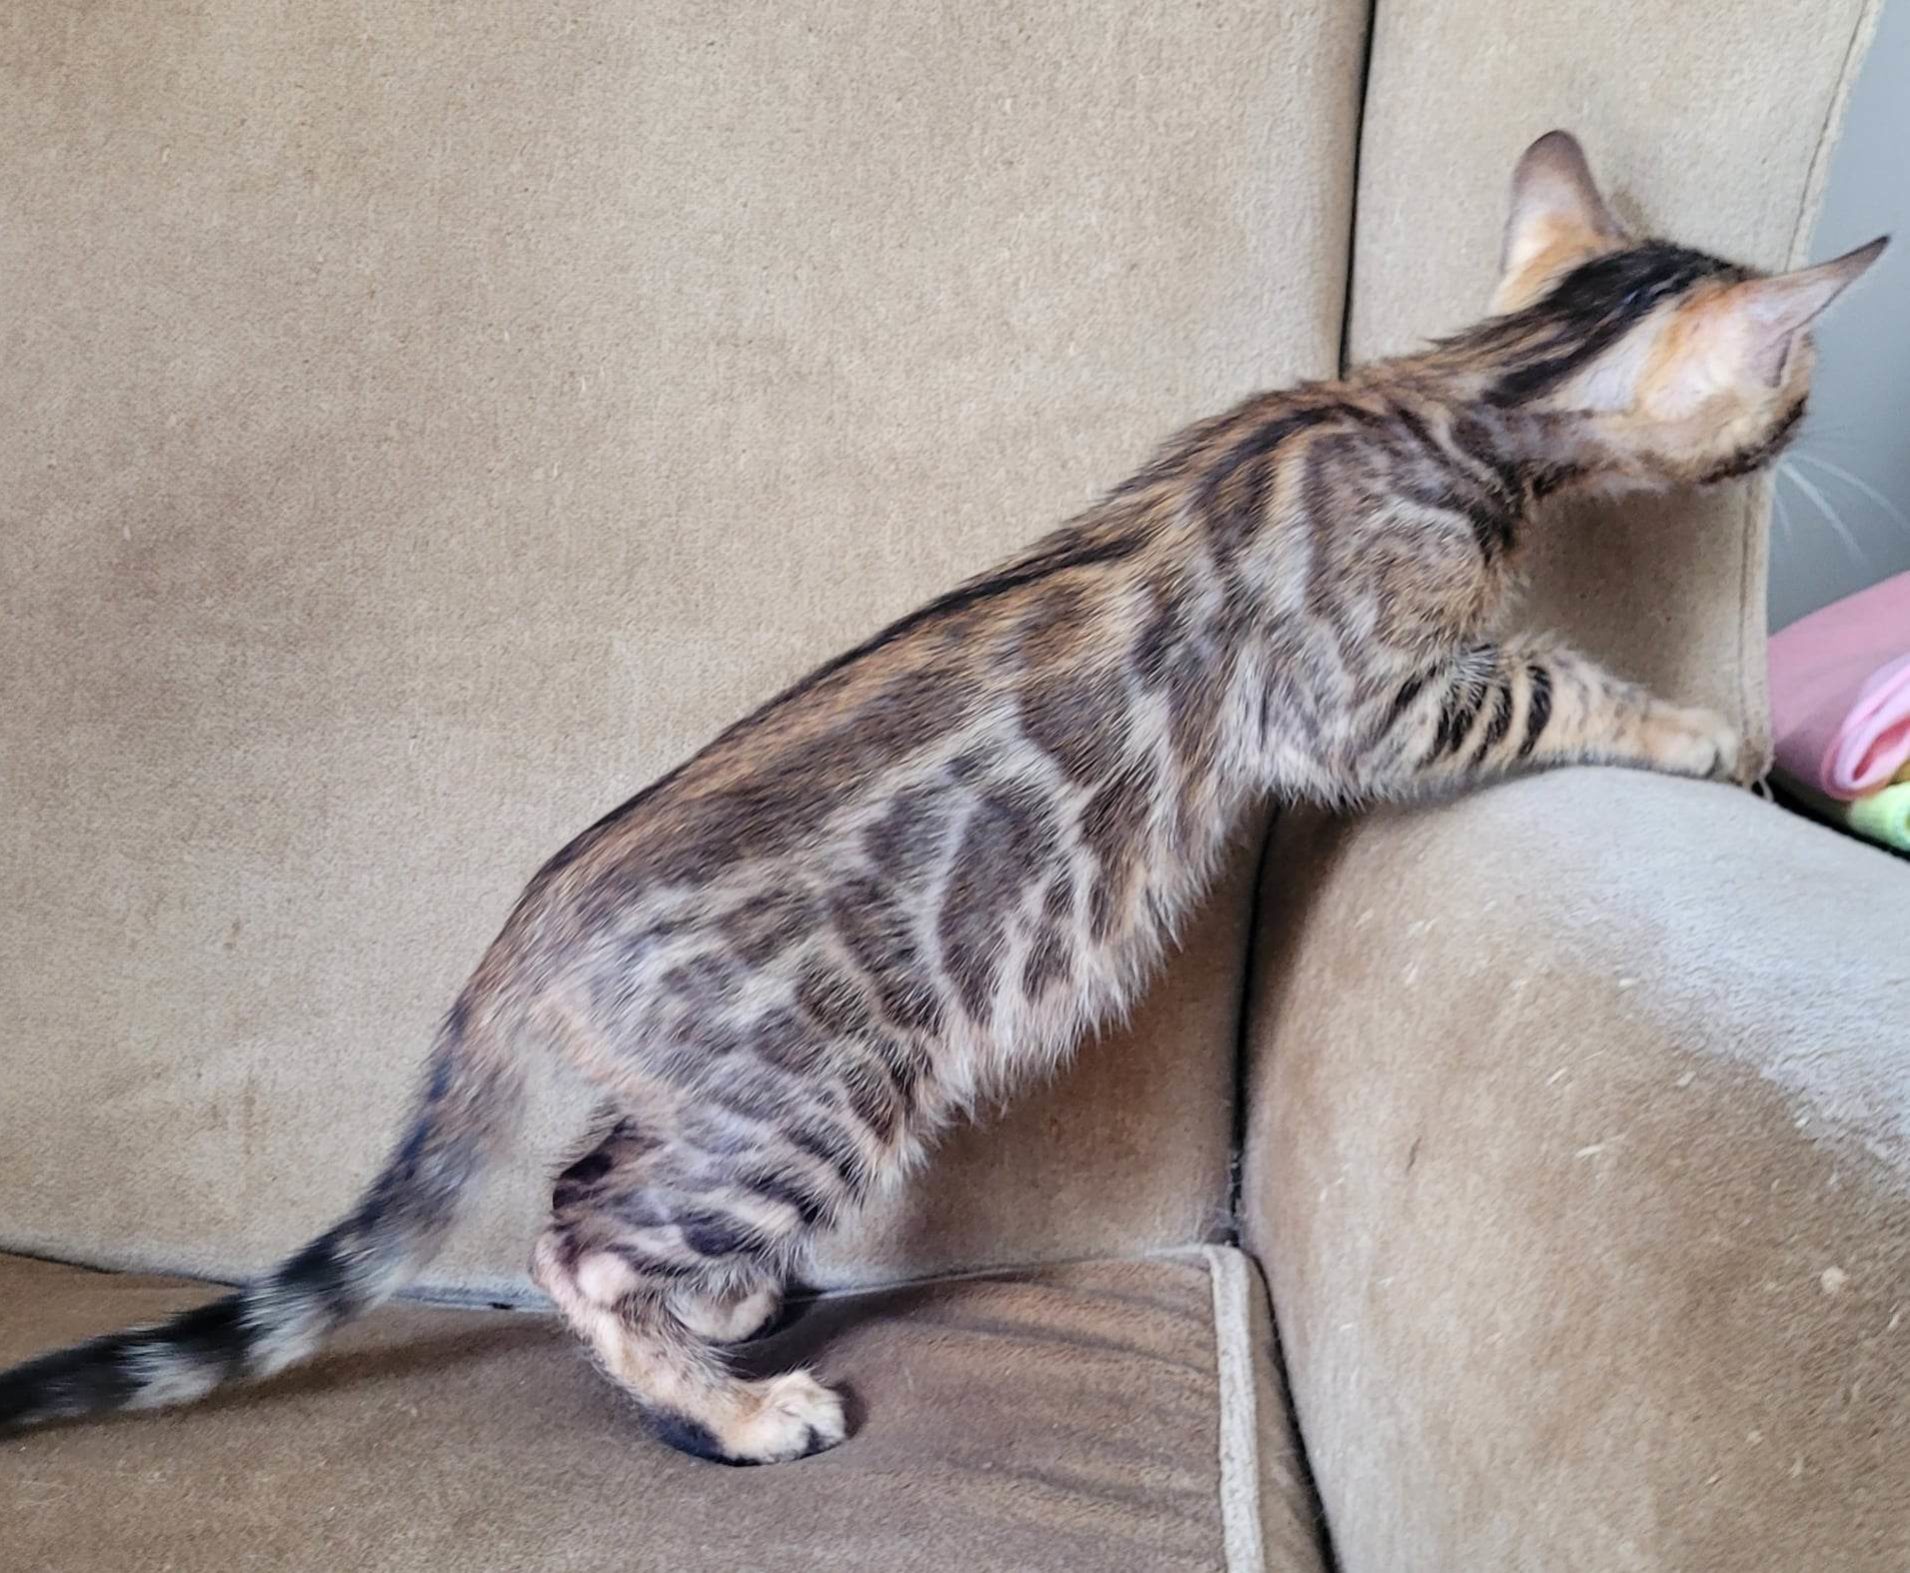 Photo 4 of Zoro-Sold the Bengal kitten.